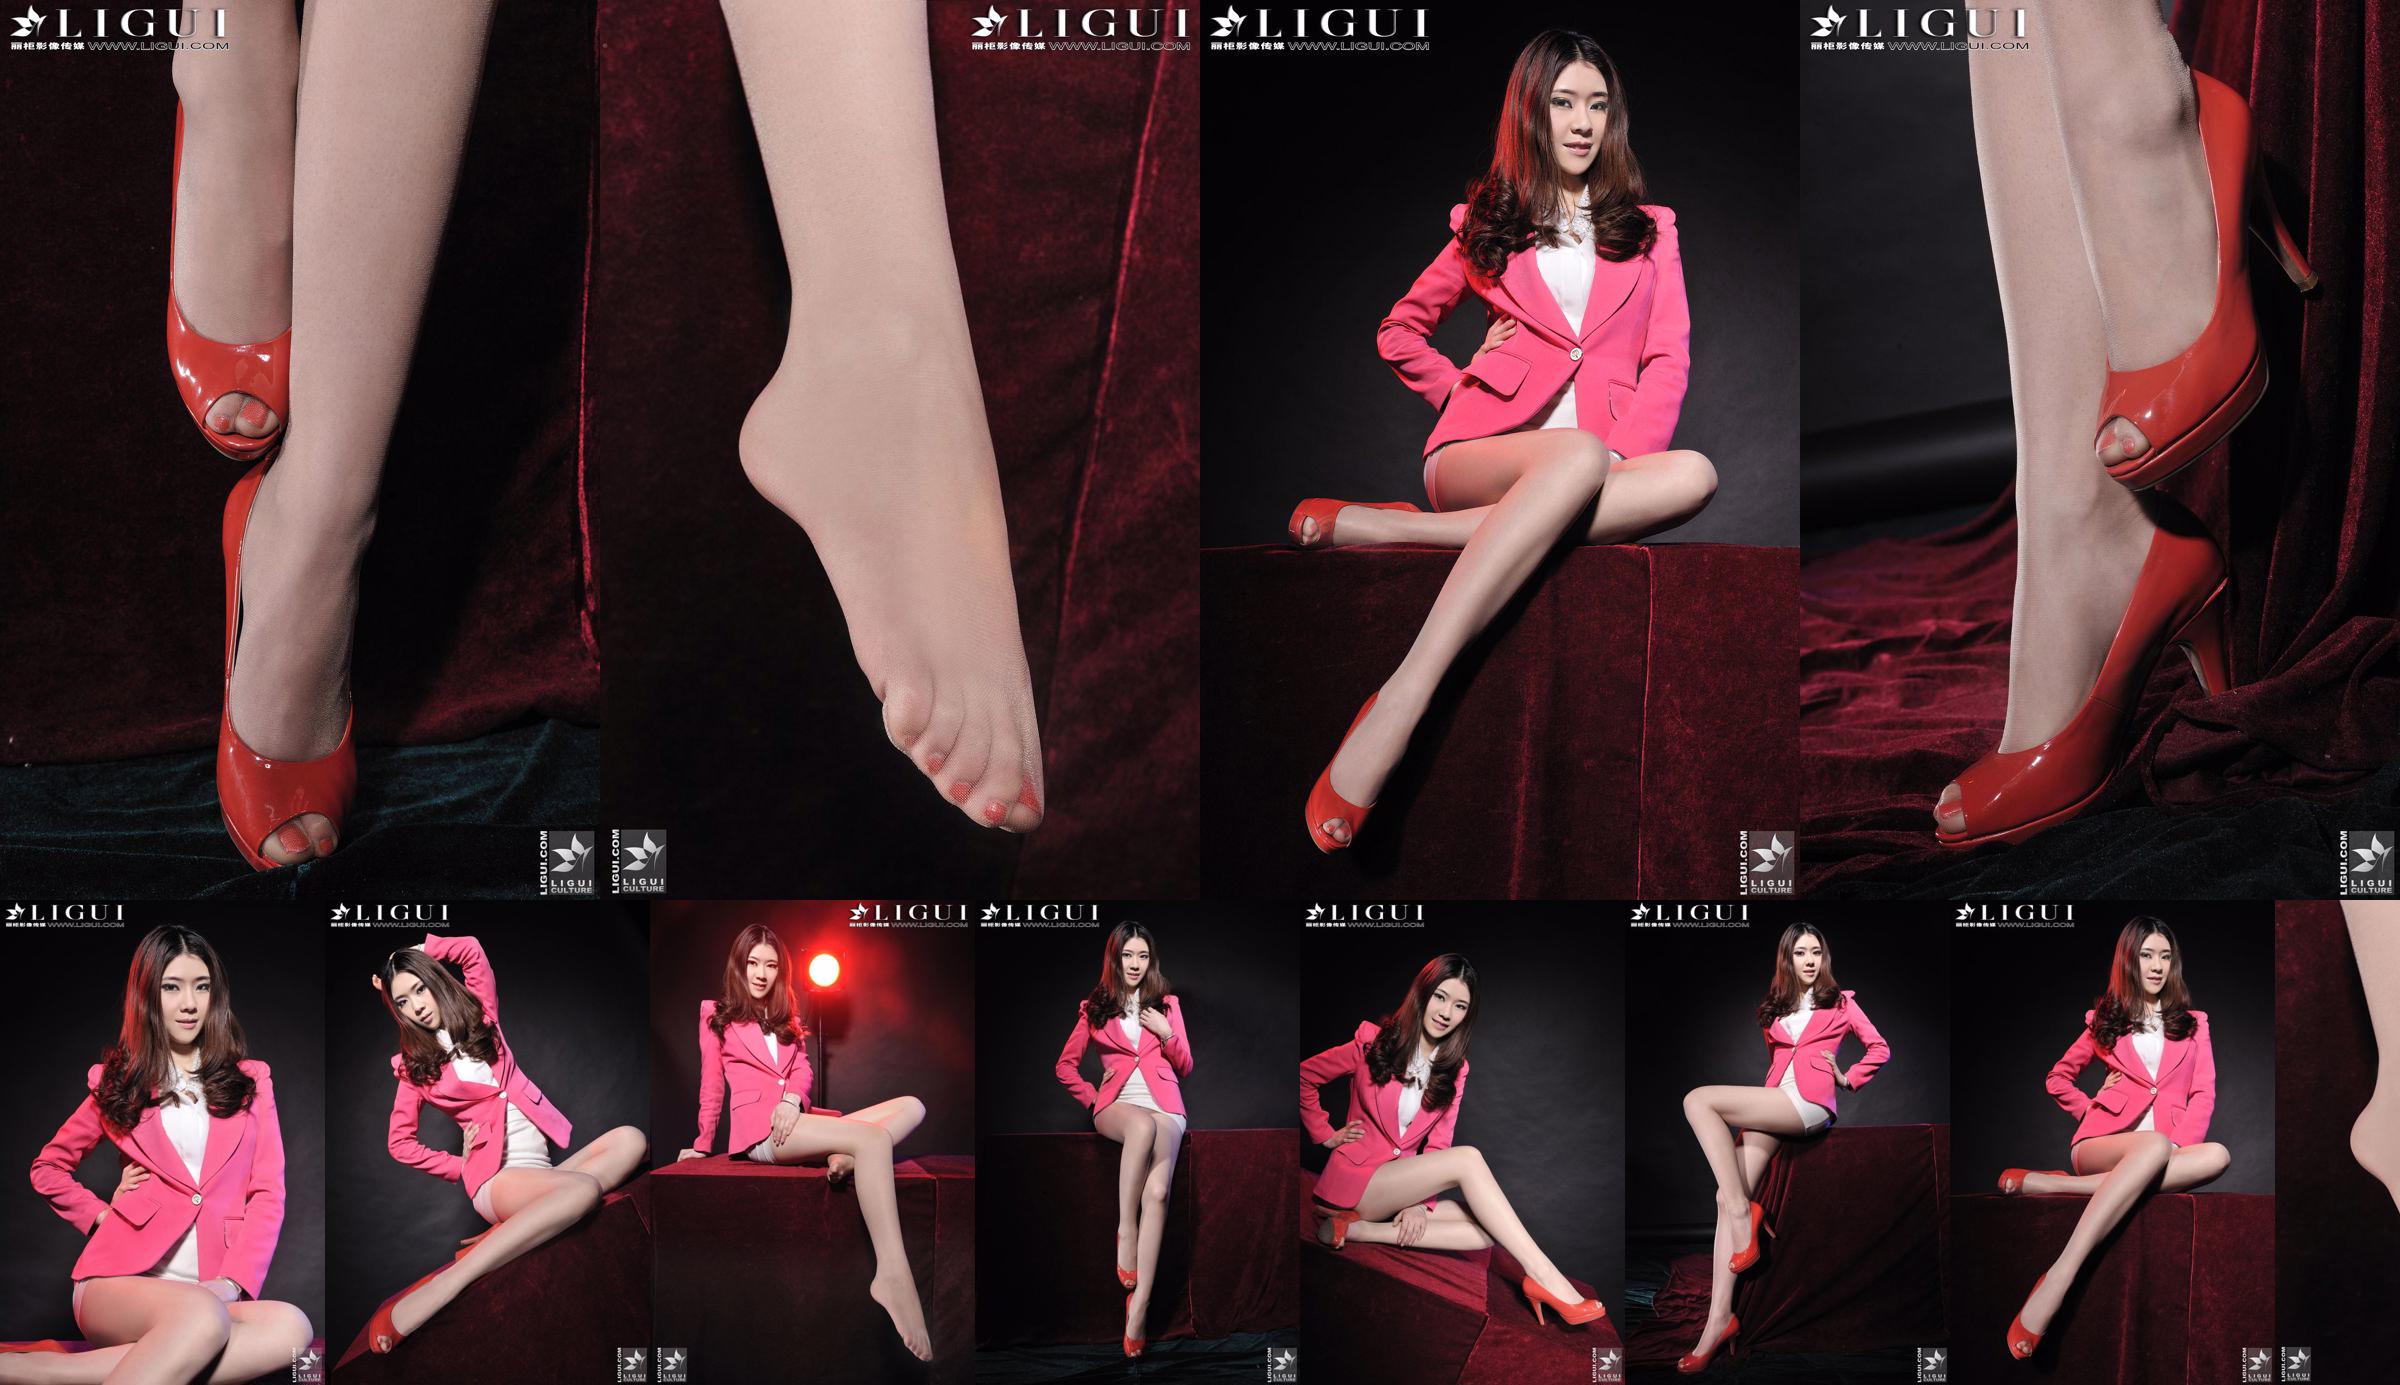 นางแบบ Chenchen "สาวส้นสูงสีแดง" [丽柜 LiGui] รูปถ่ายขาสวยและเท้าหยก No.251e42 หน้า 7